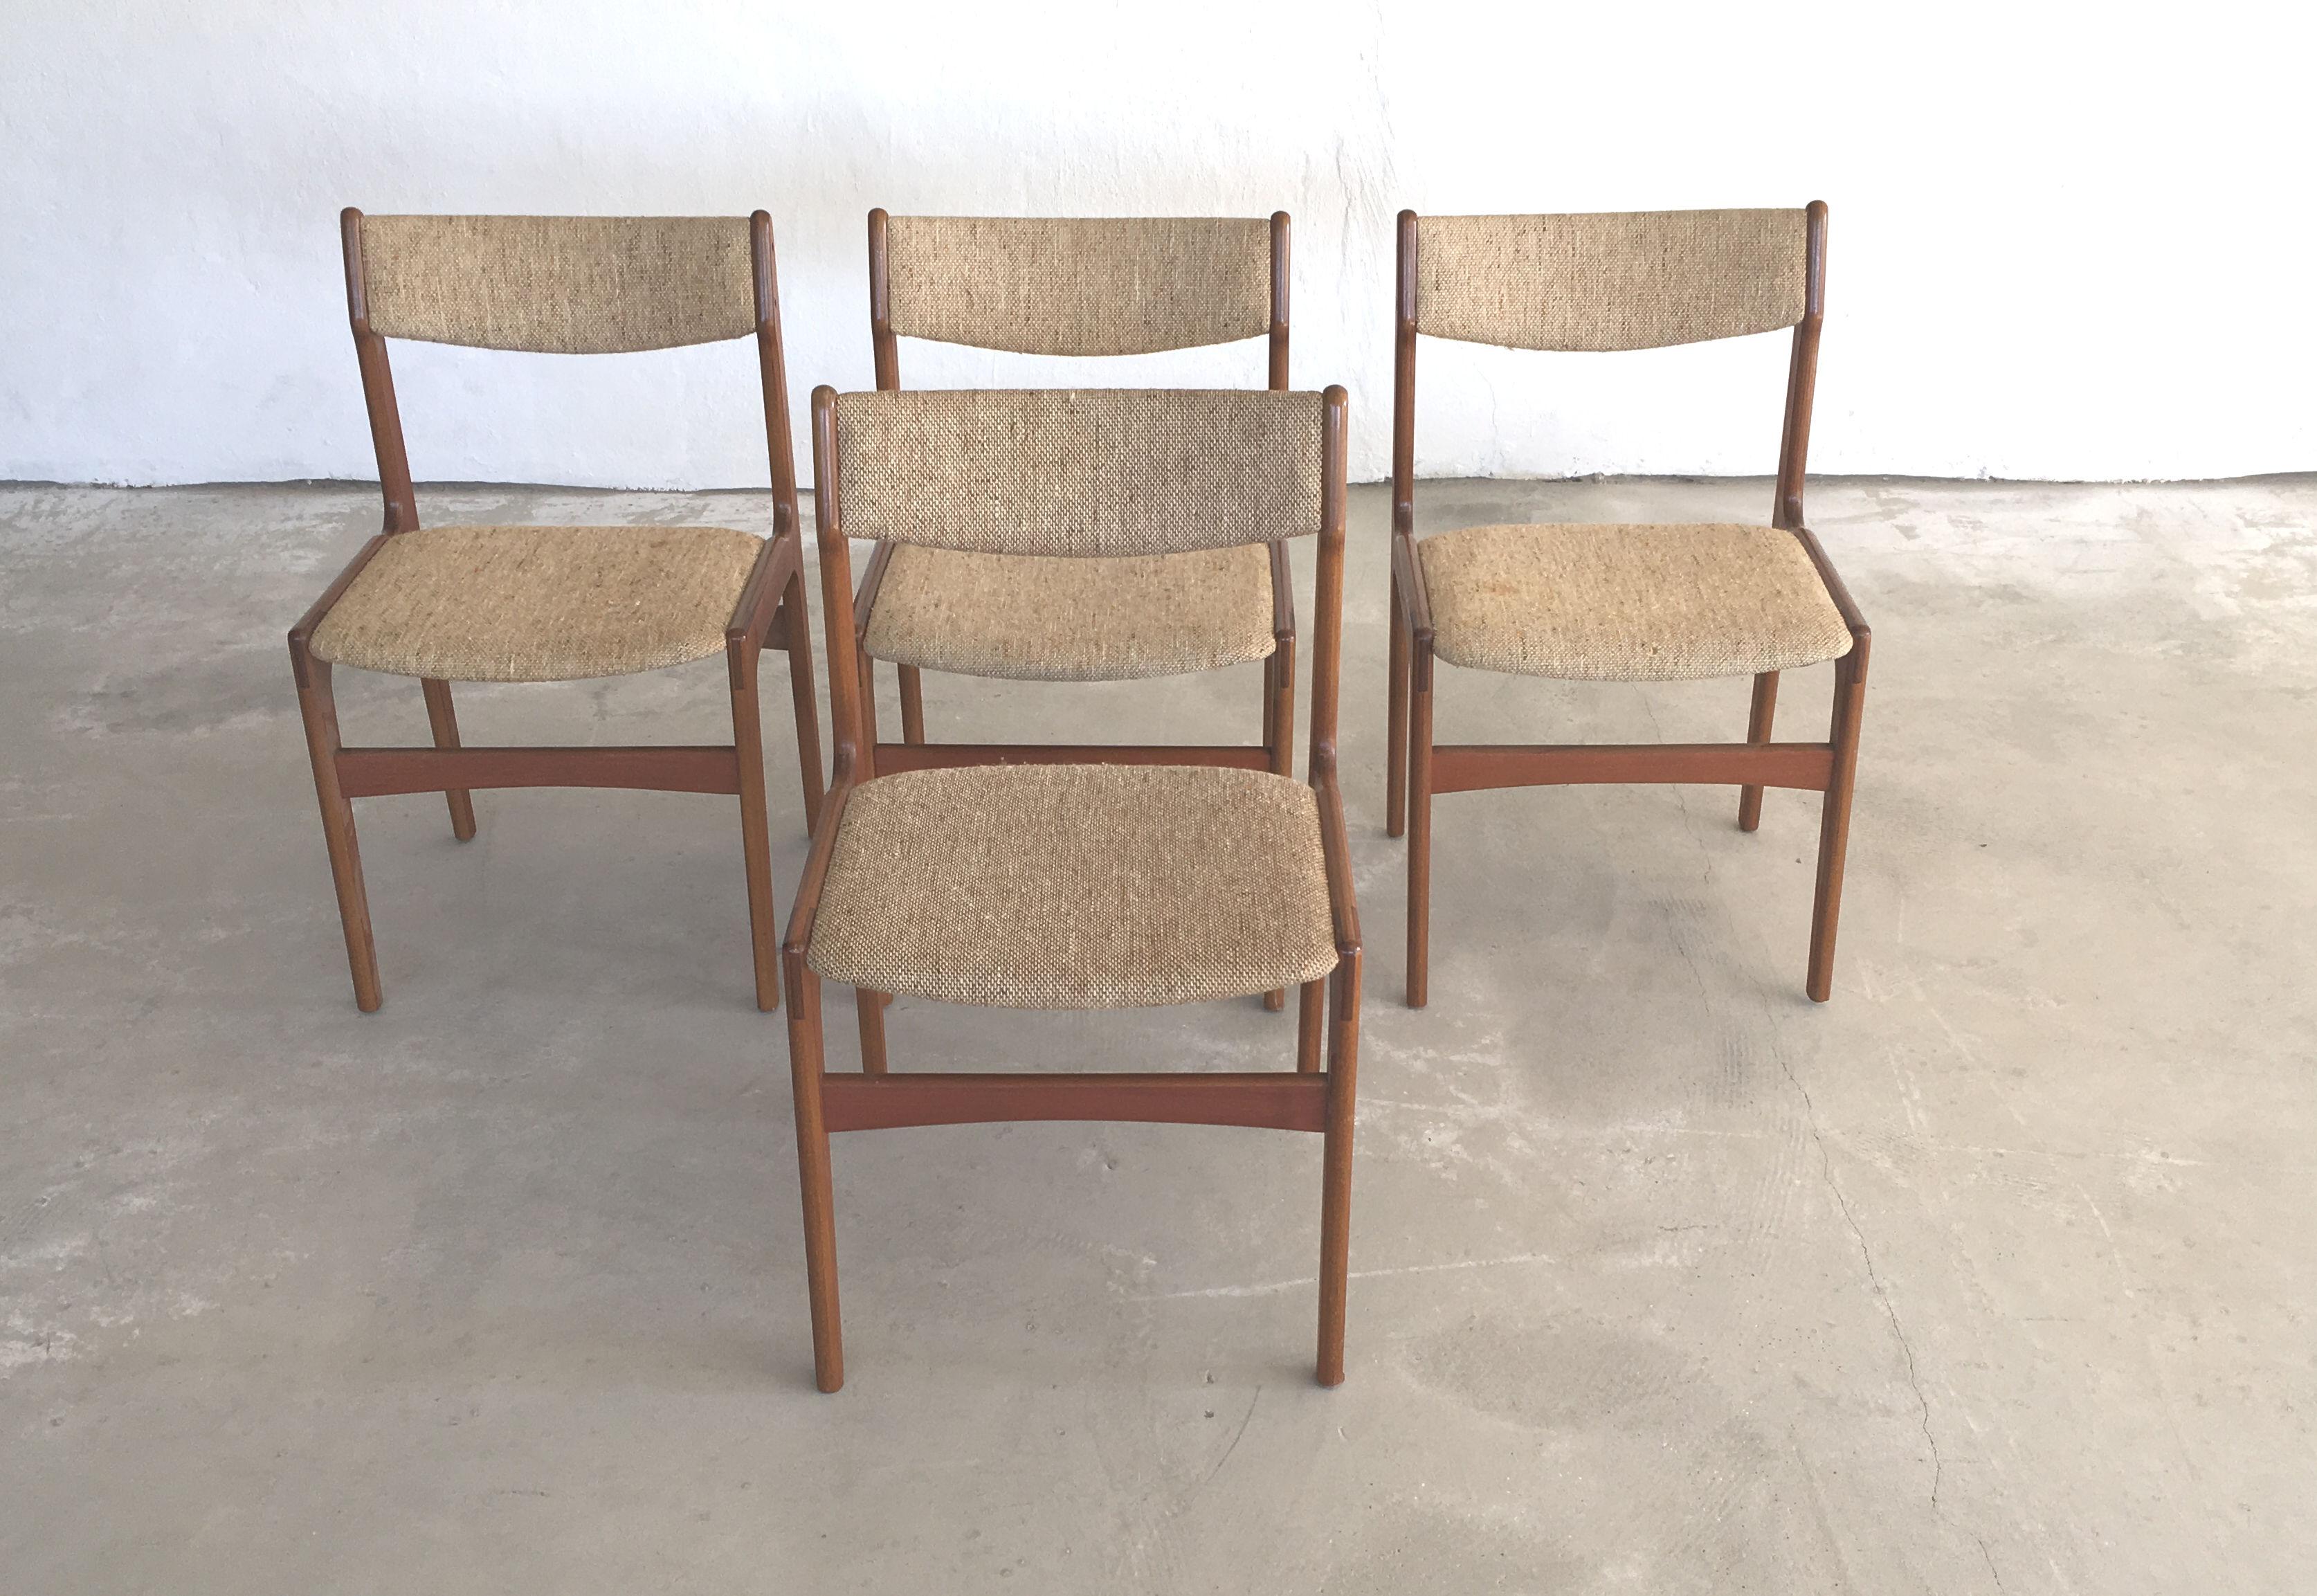 Ensemble de quatre chaises à manger en teck conçues par Erik Buch.

Les chaises sont, comme toutes les chaises d'Erik Buchs, confortables et en très bon état.

Les chaises ont été restaurées et remises en état par notre ébéniste afin de garantir